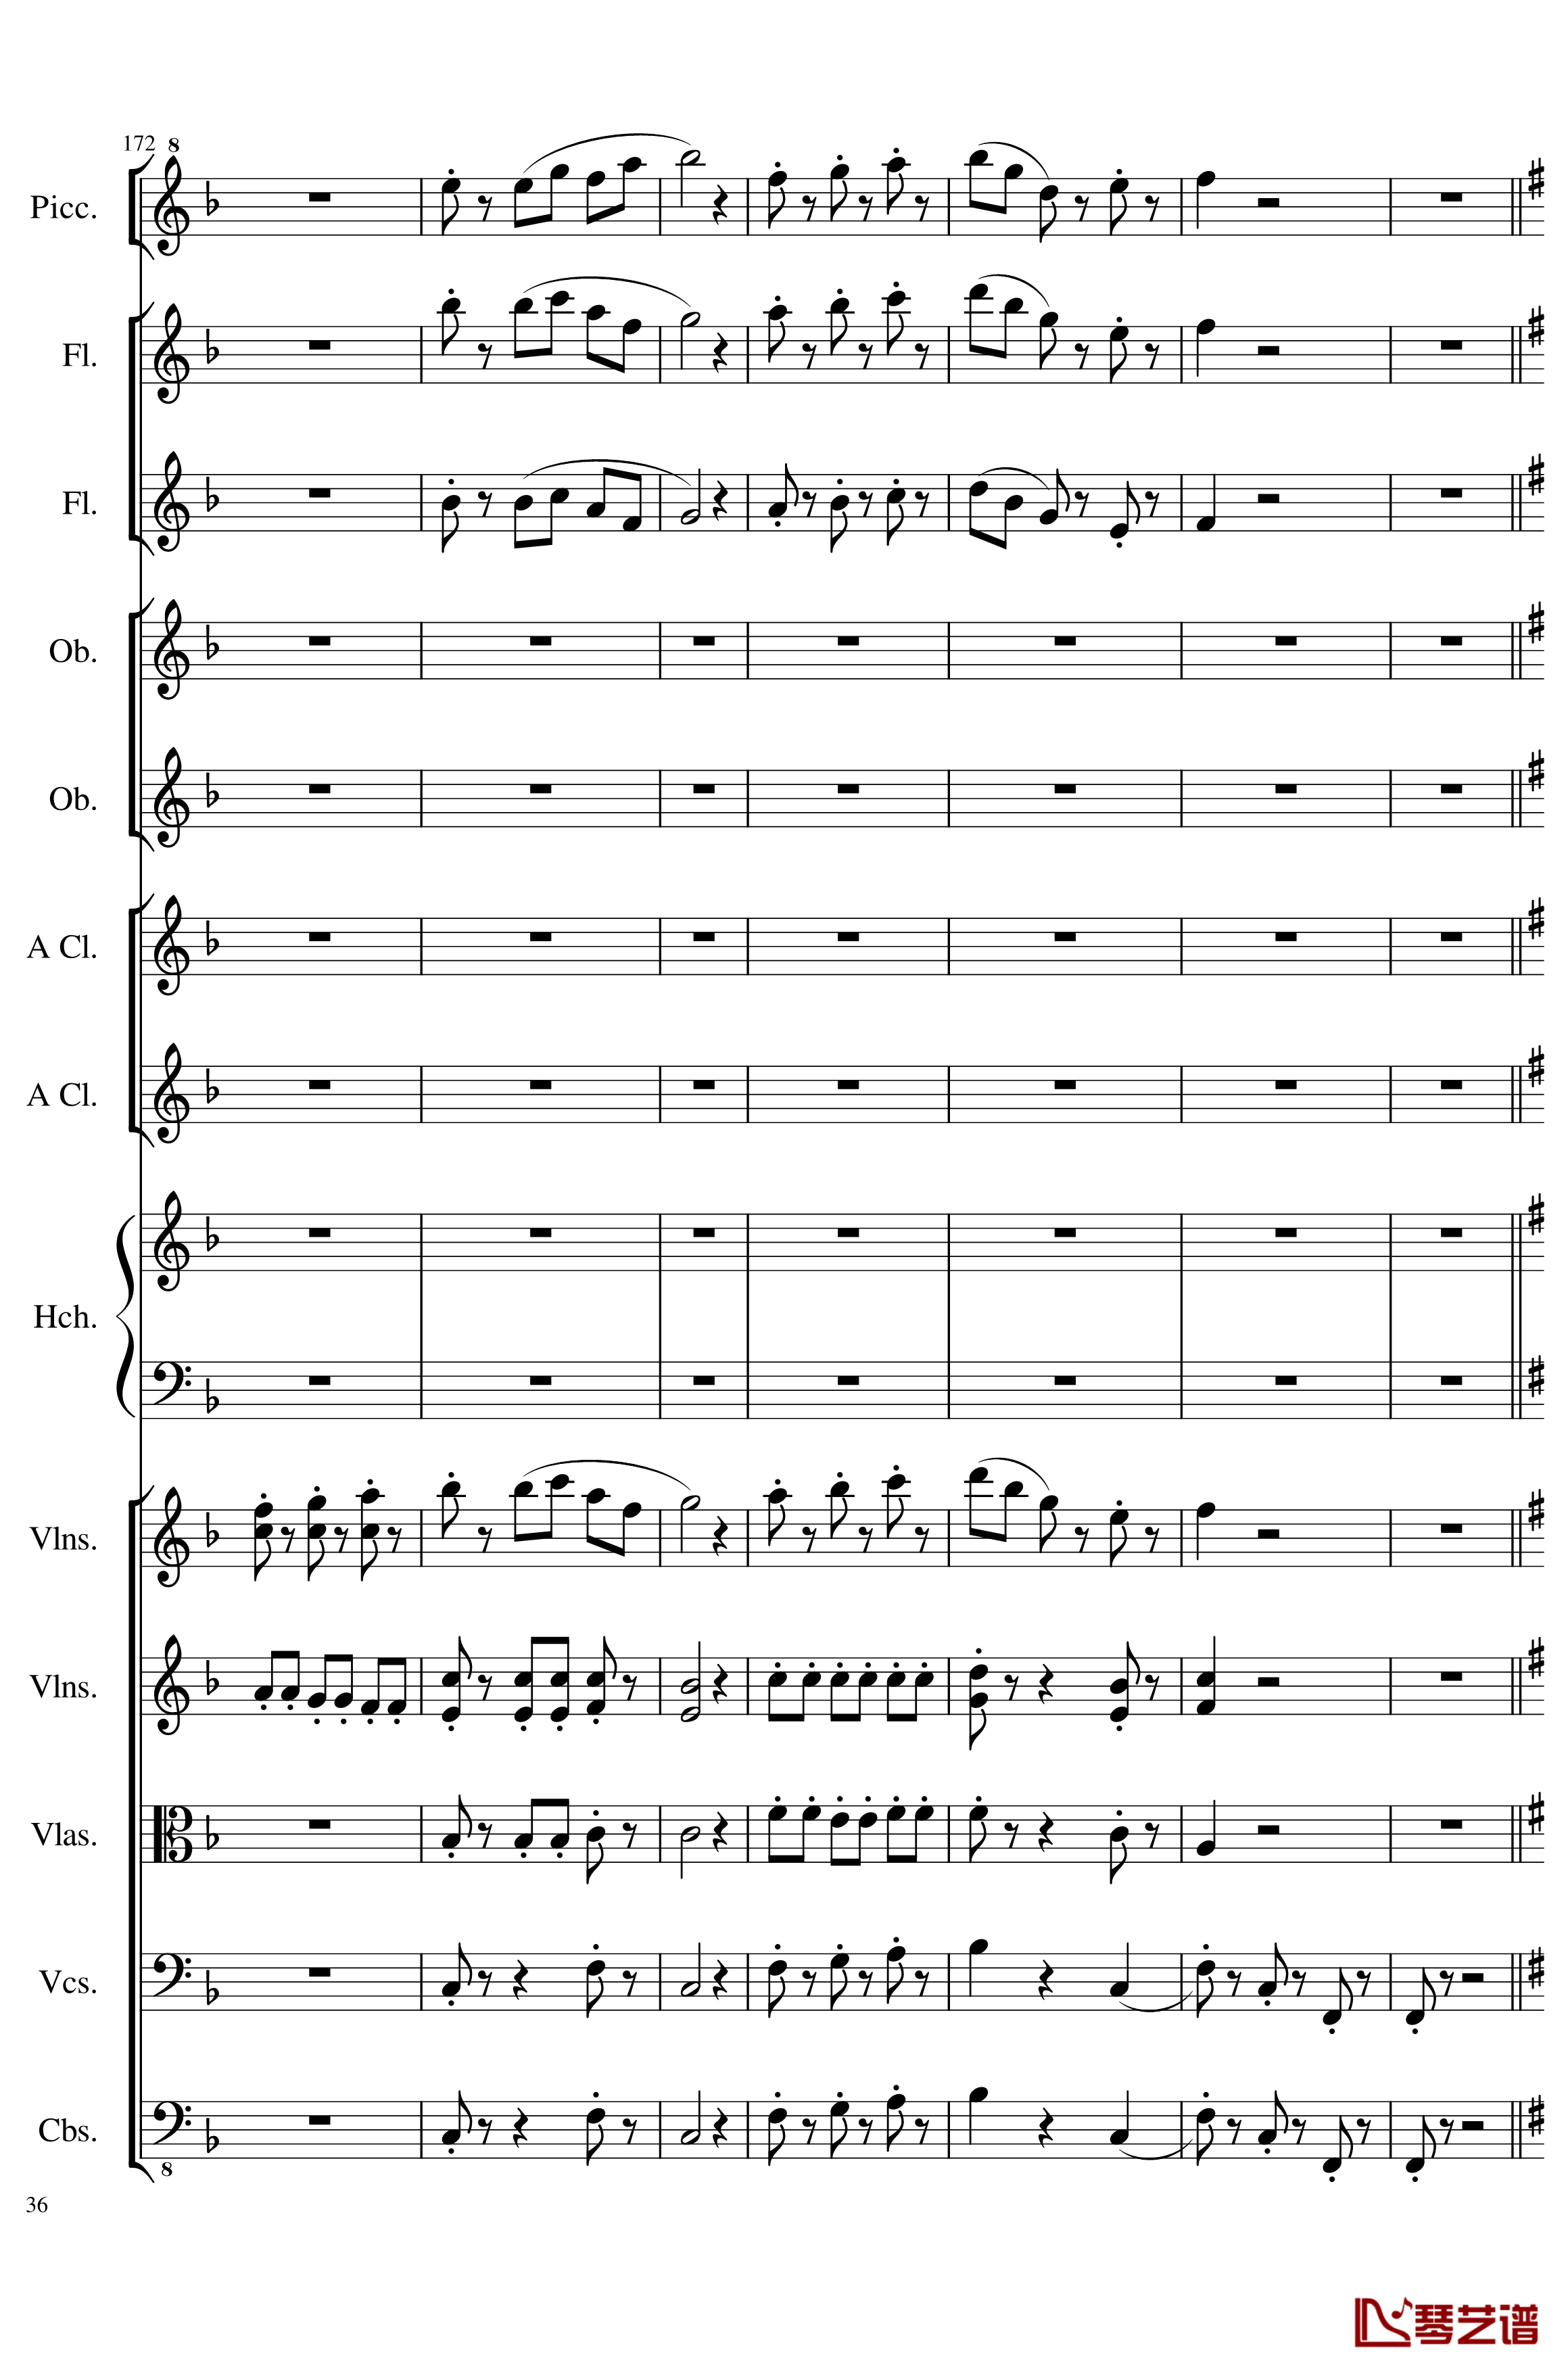 7 Contredanses No.1-7, Op.124钢琴谱-7首乡村舞曲，第一至第七，作品124-一个球36